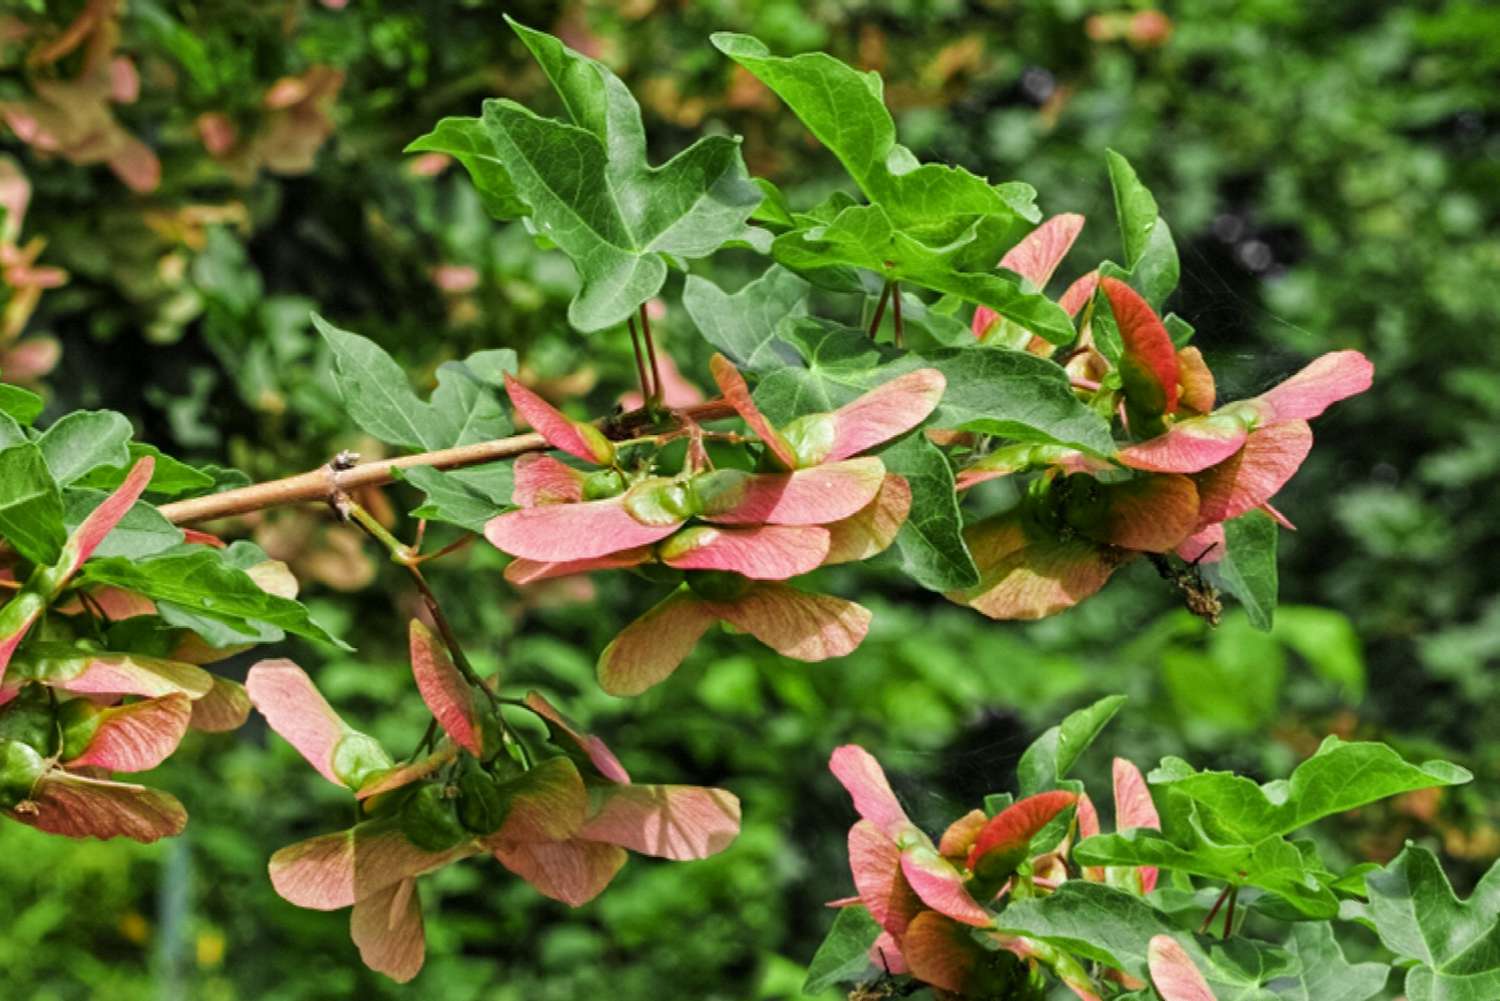 Samara-Frucht mit orangen Flügeln und Blättern in den Zweigen